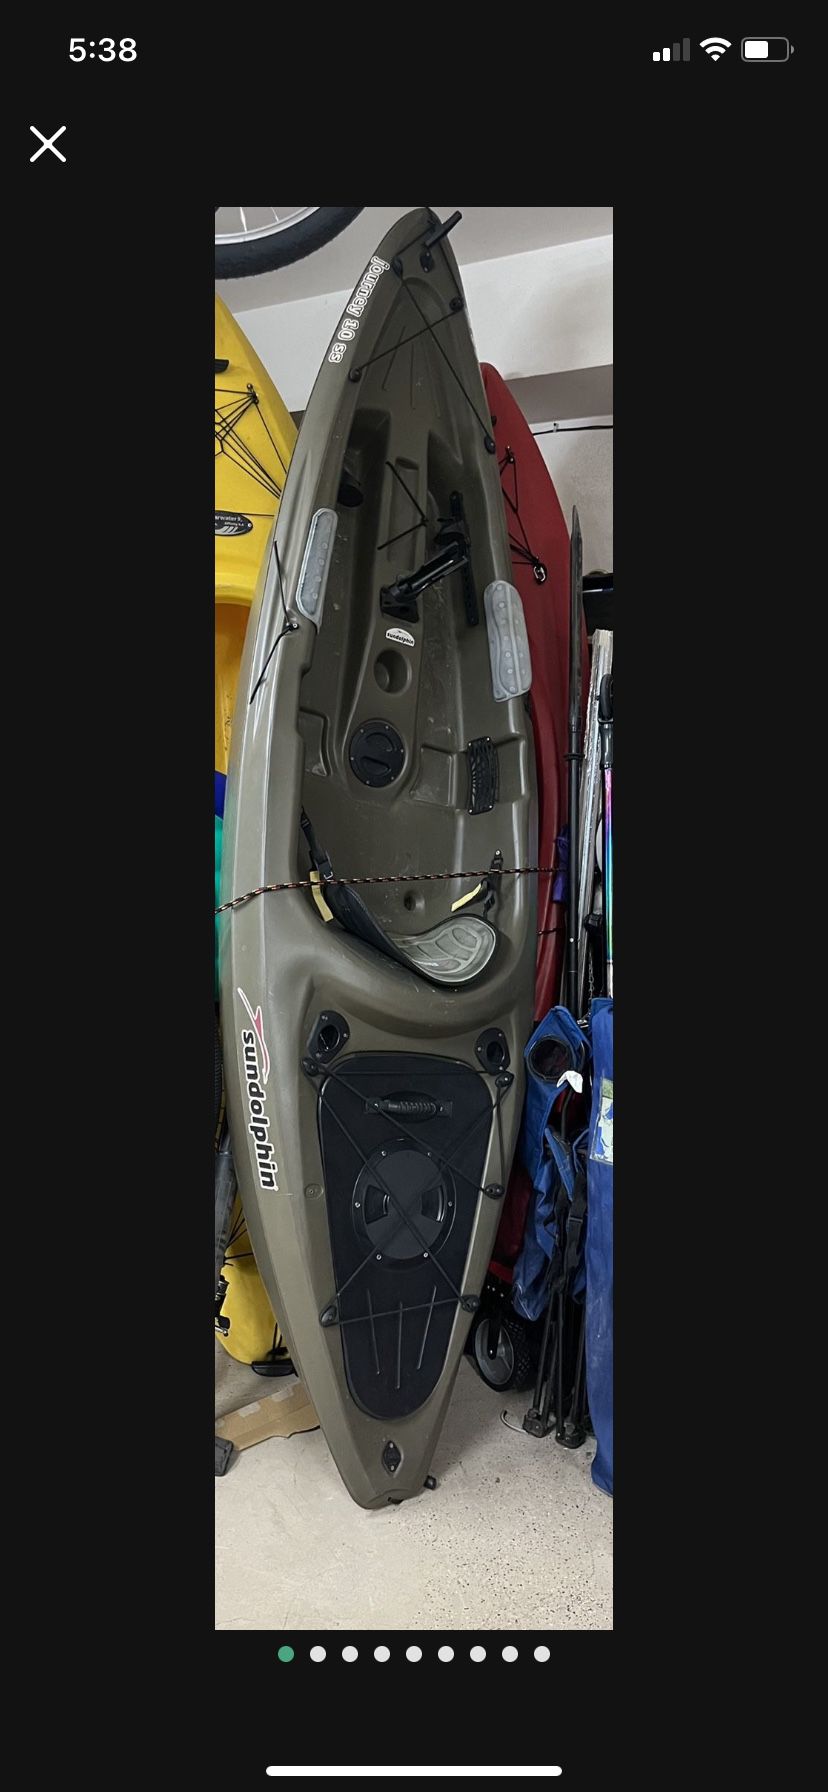 Sundolphin Kayak 